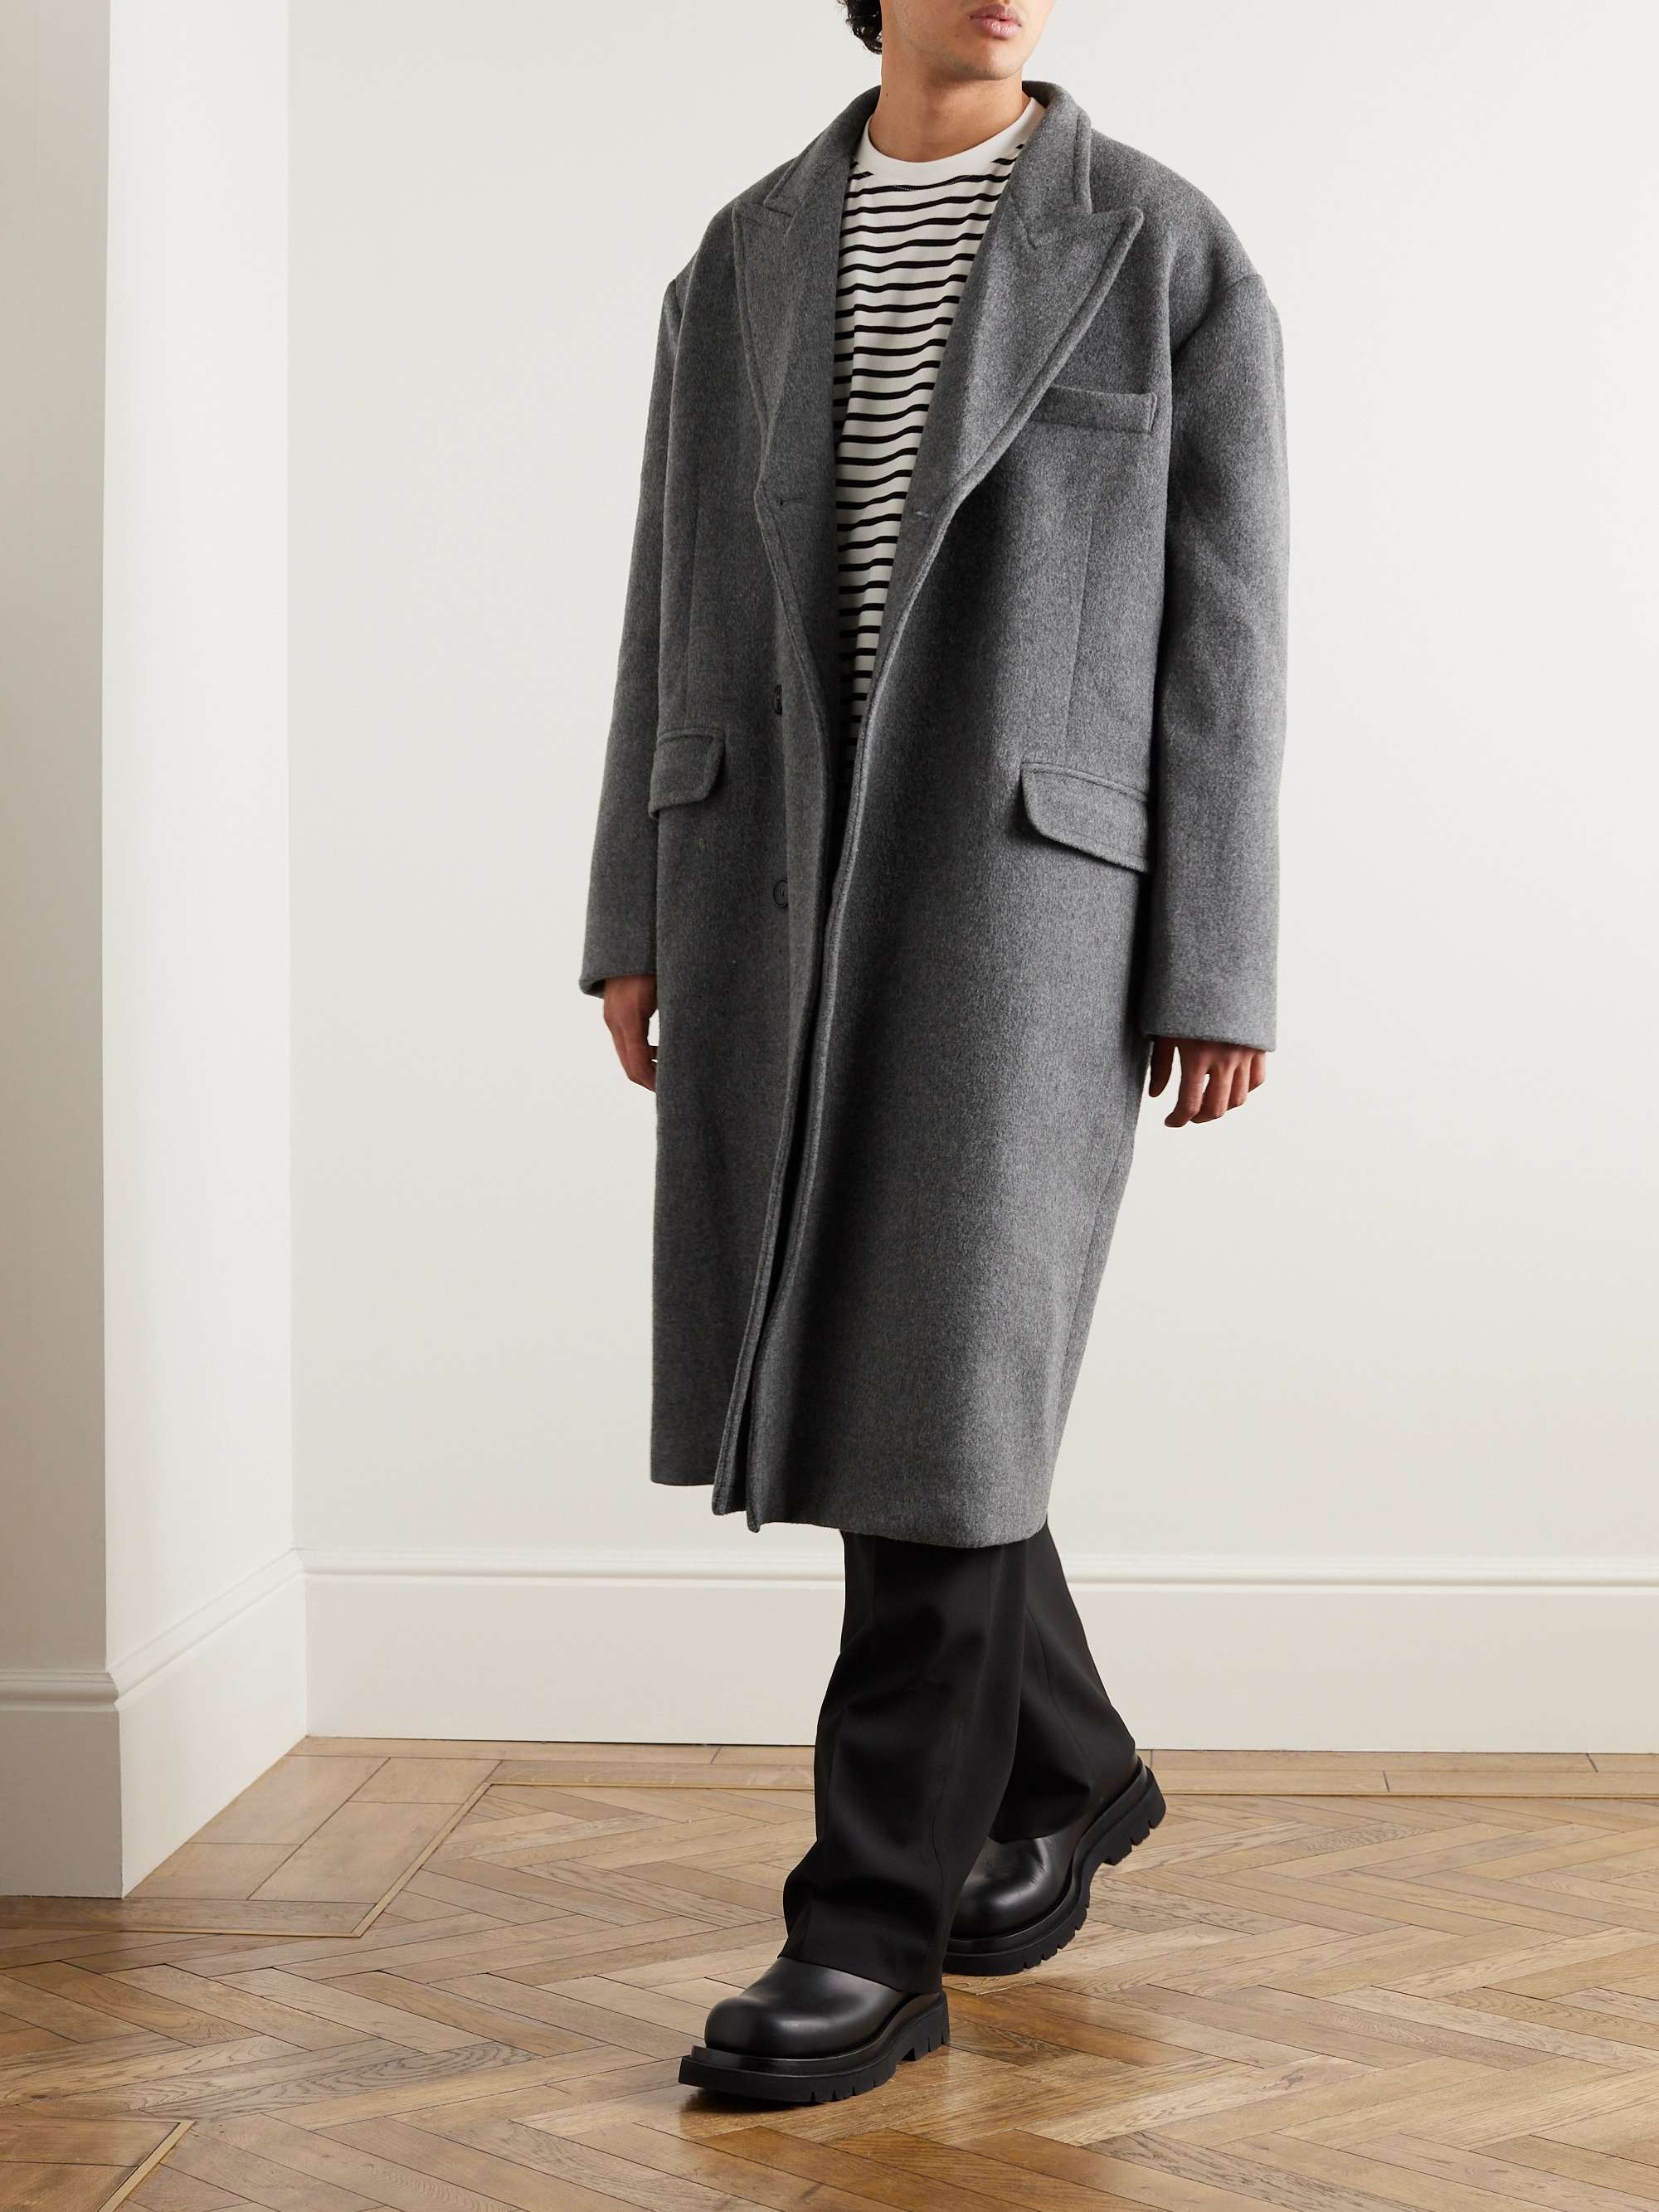 THE FRANKIE SHOP Curtis Oversized Wool-Blend Coat for Men | MR PORTER